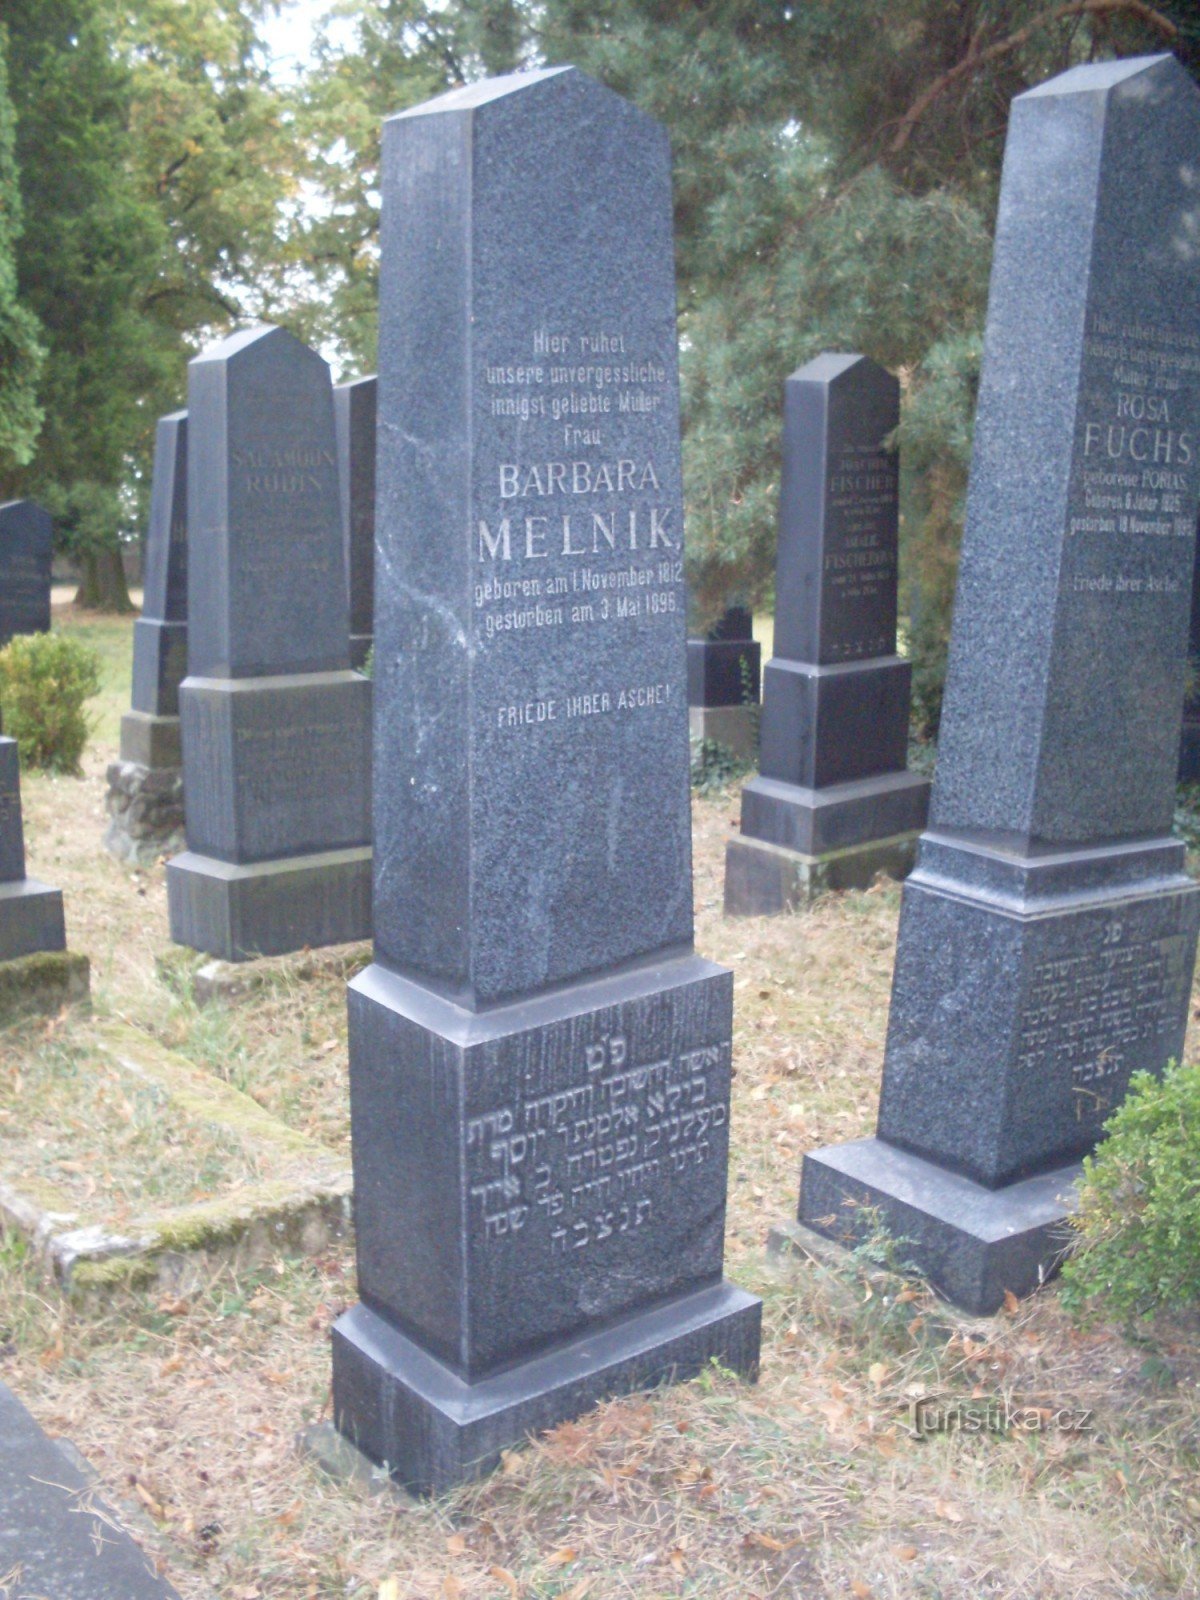 Ο τάφος της Barbora Melnik, μιας γυναίκας που ήρθε στο Boleslav από το Mělník